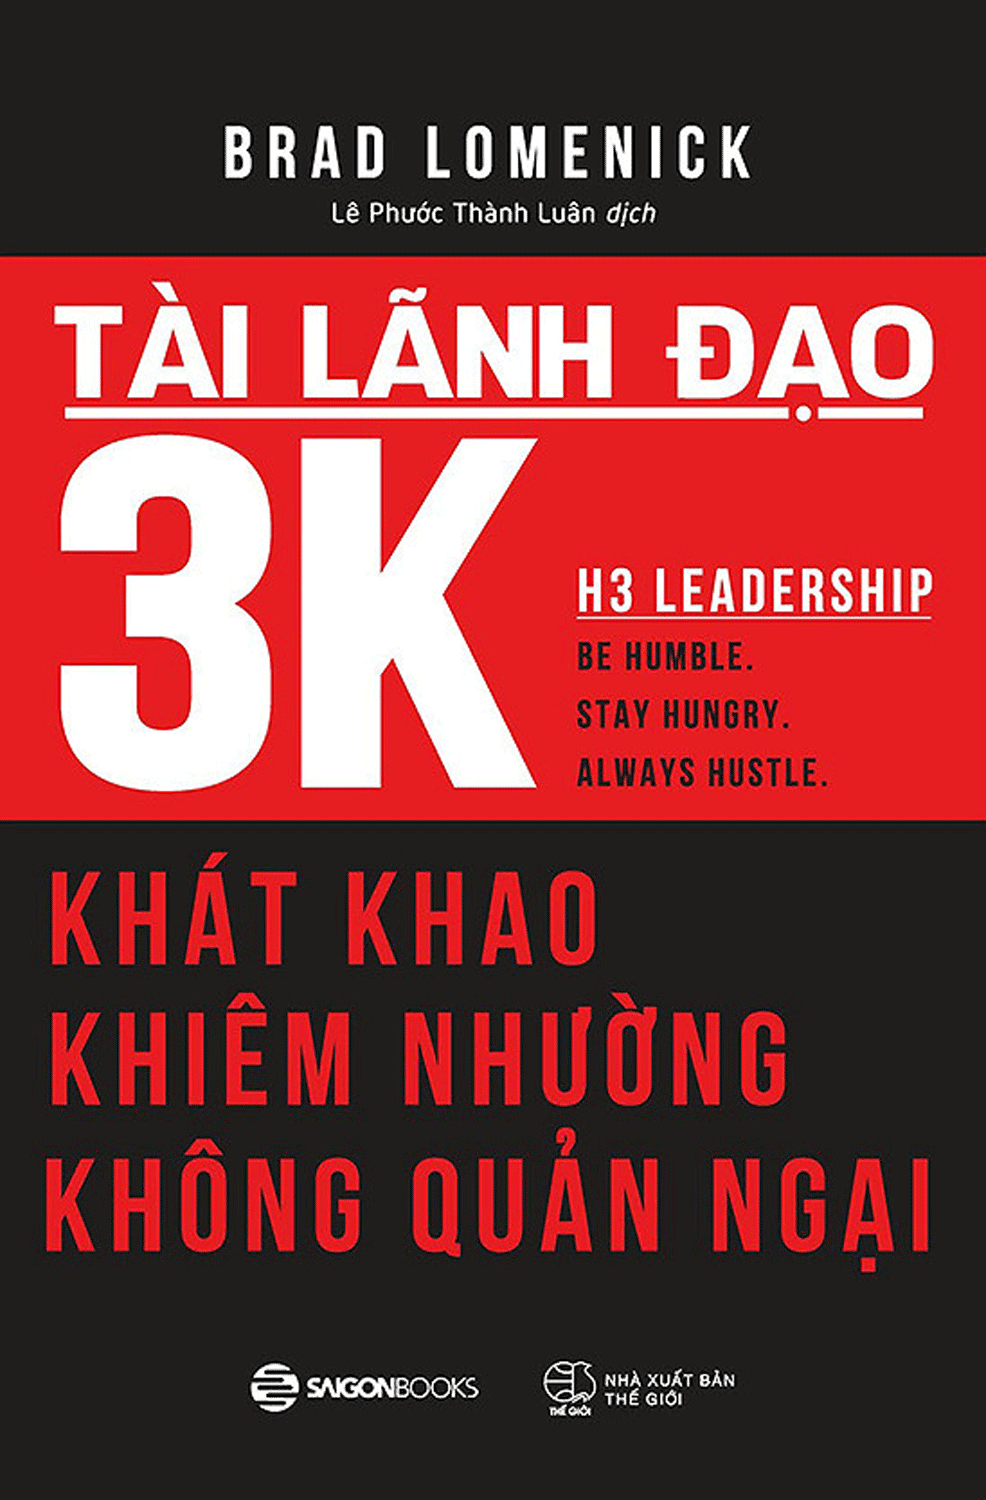 Tài năng lãnh đạo 3K: Ham muốn, Khiêm tốn, Không sợ hãi